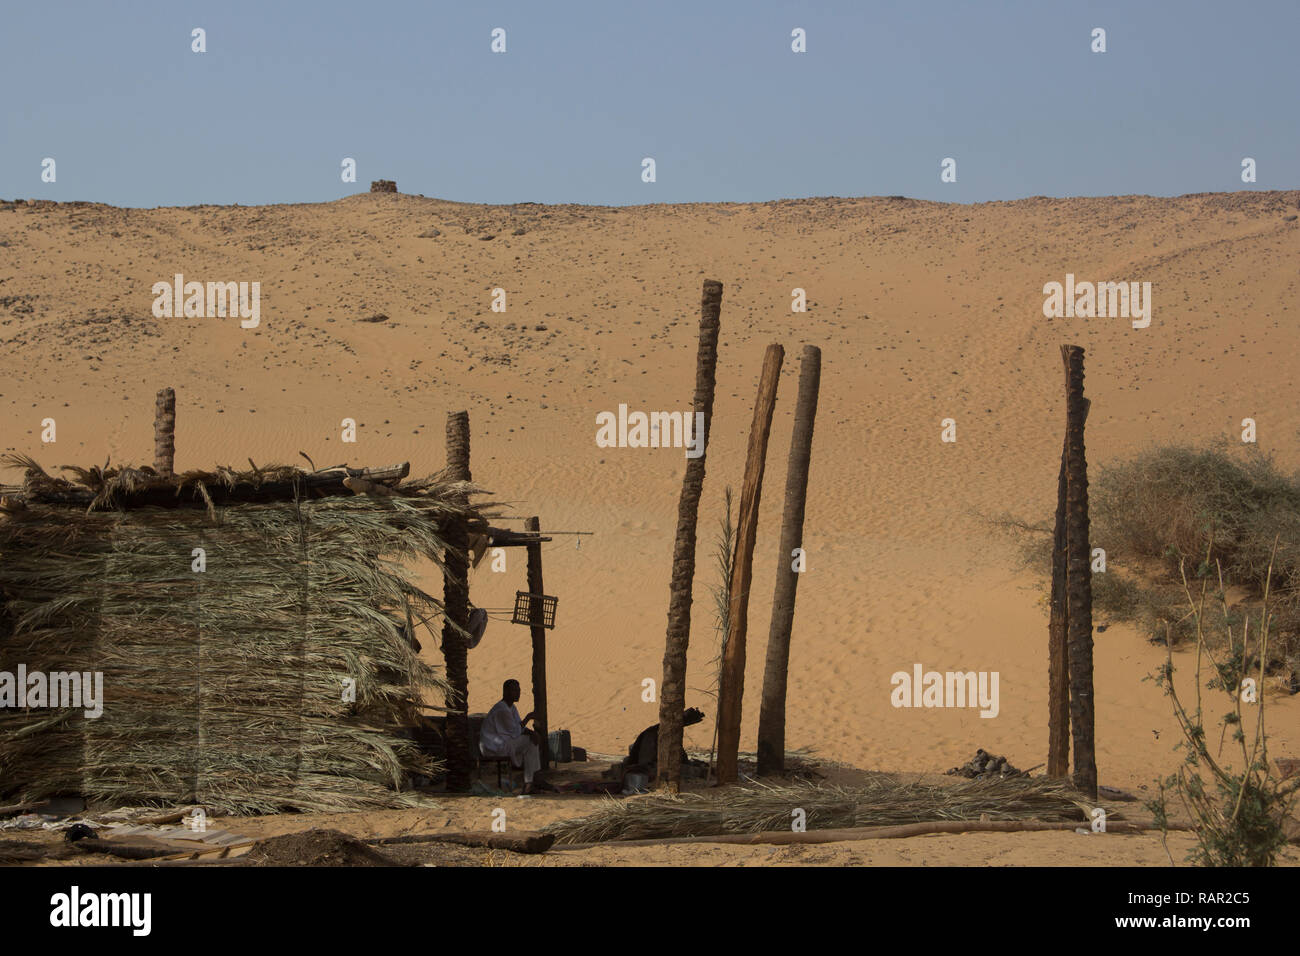 Simple rural tent in desert near Aswan, Egypt Stock Photo